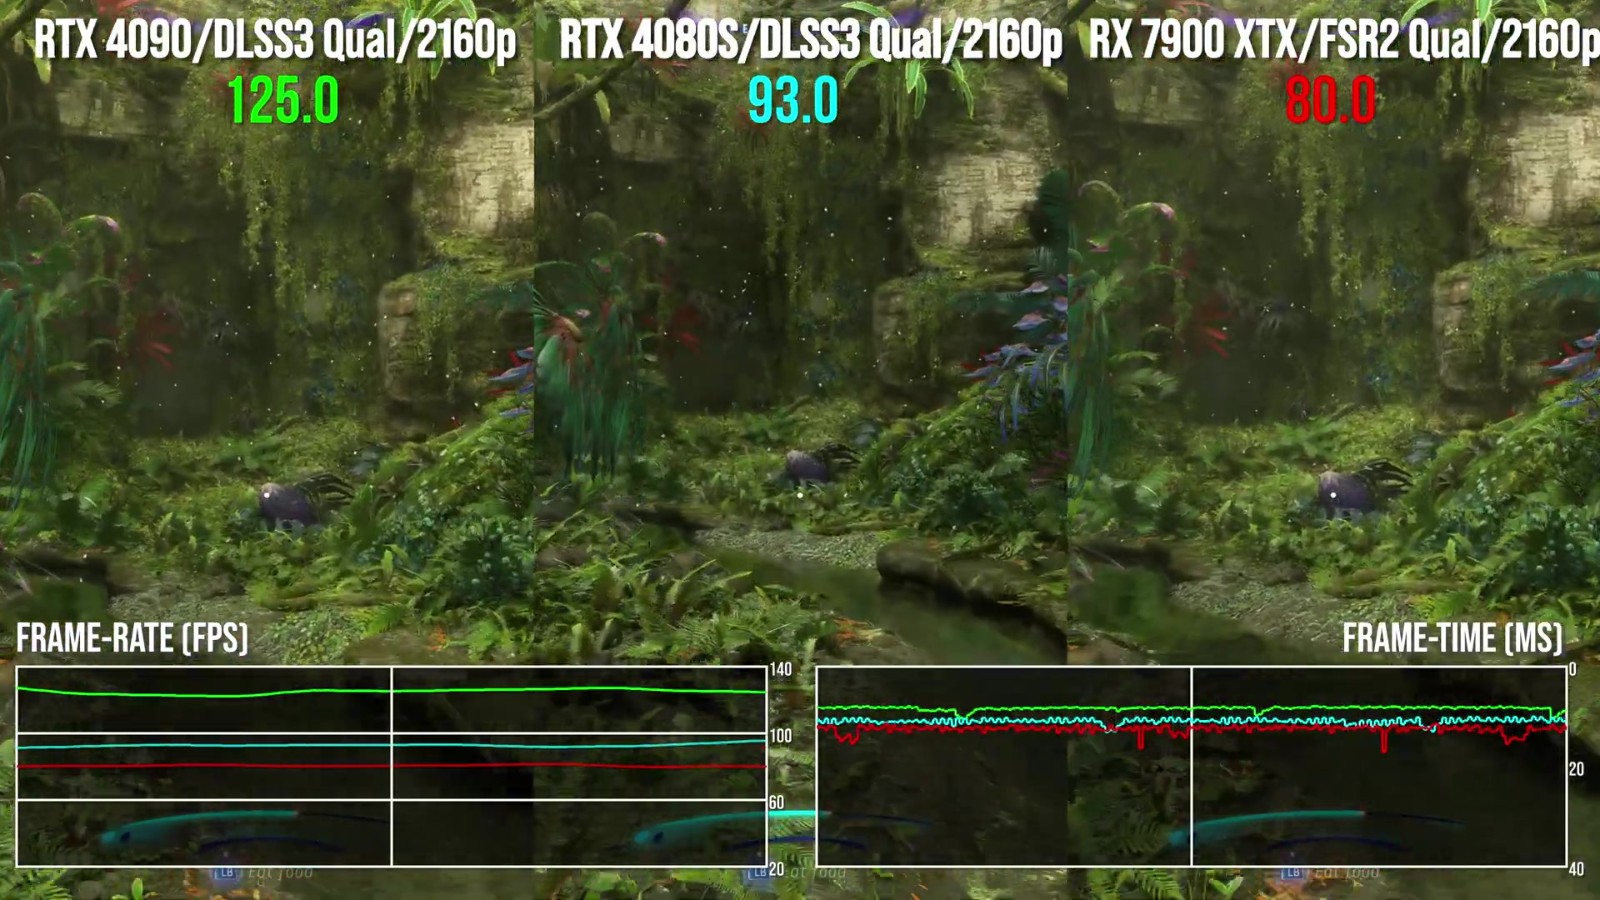 DF宣告视频 RTX4080S比索尼PS5快3倍